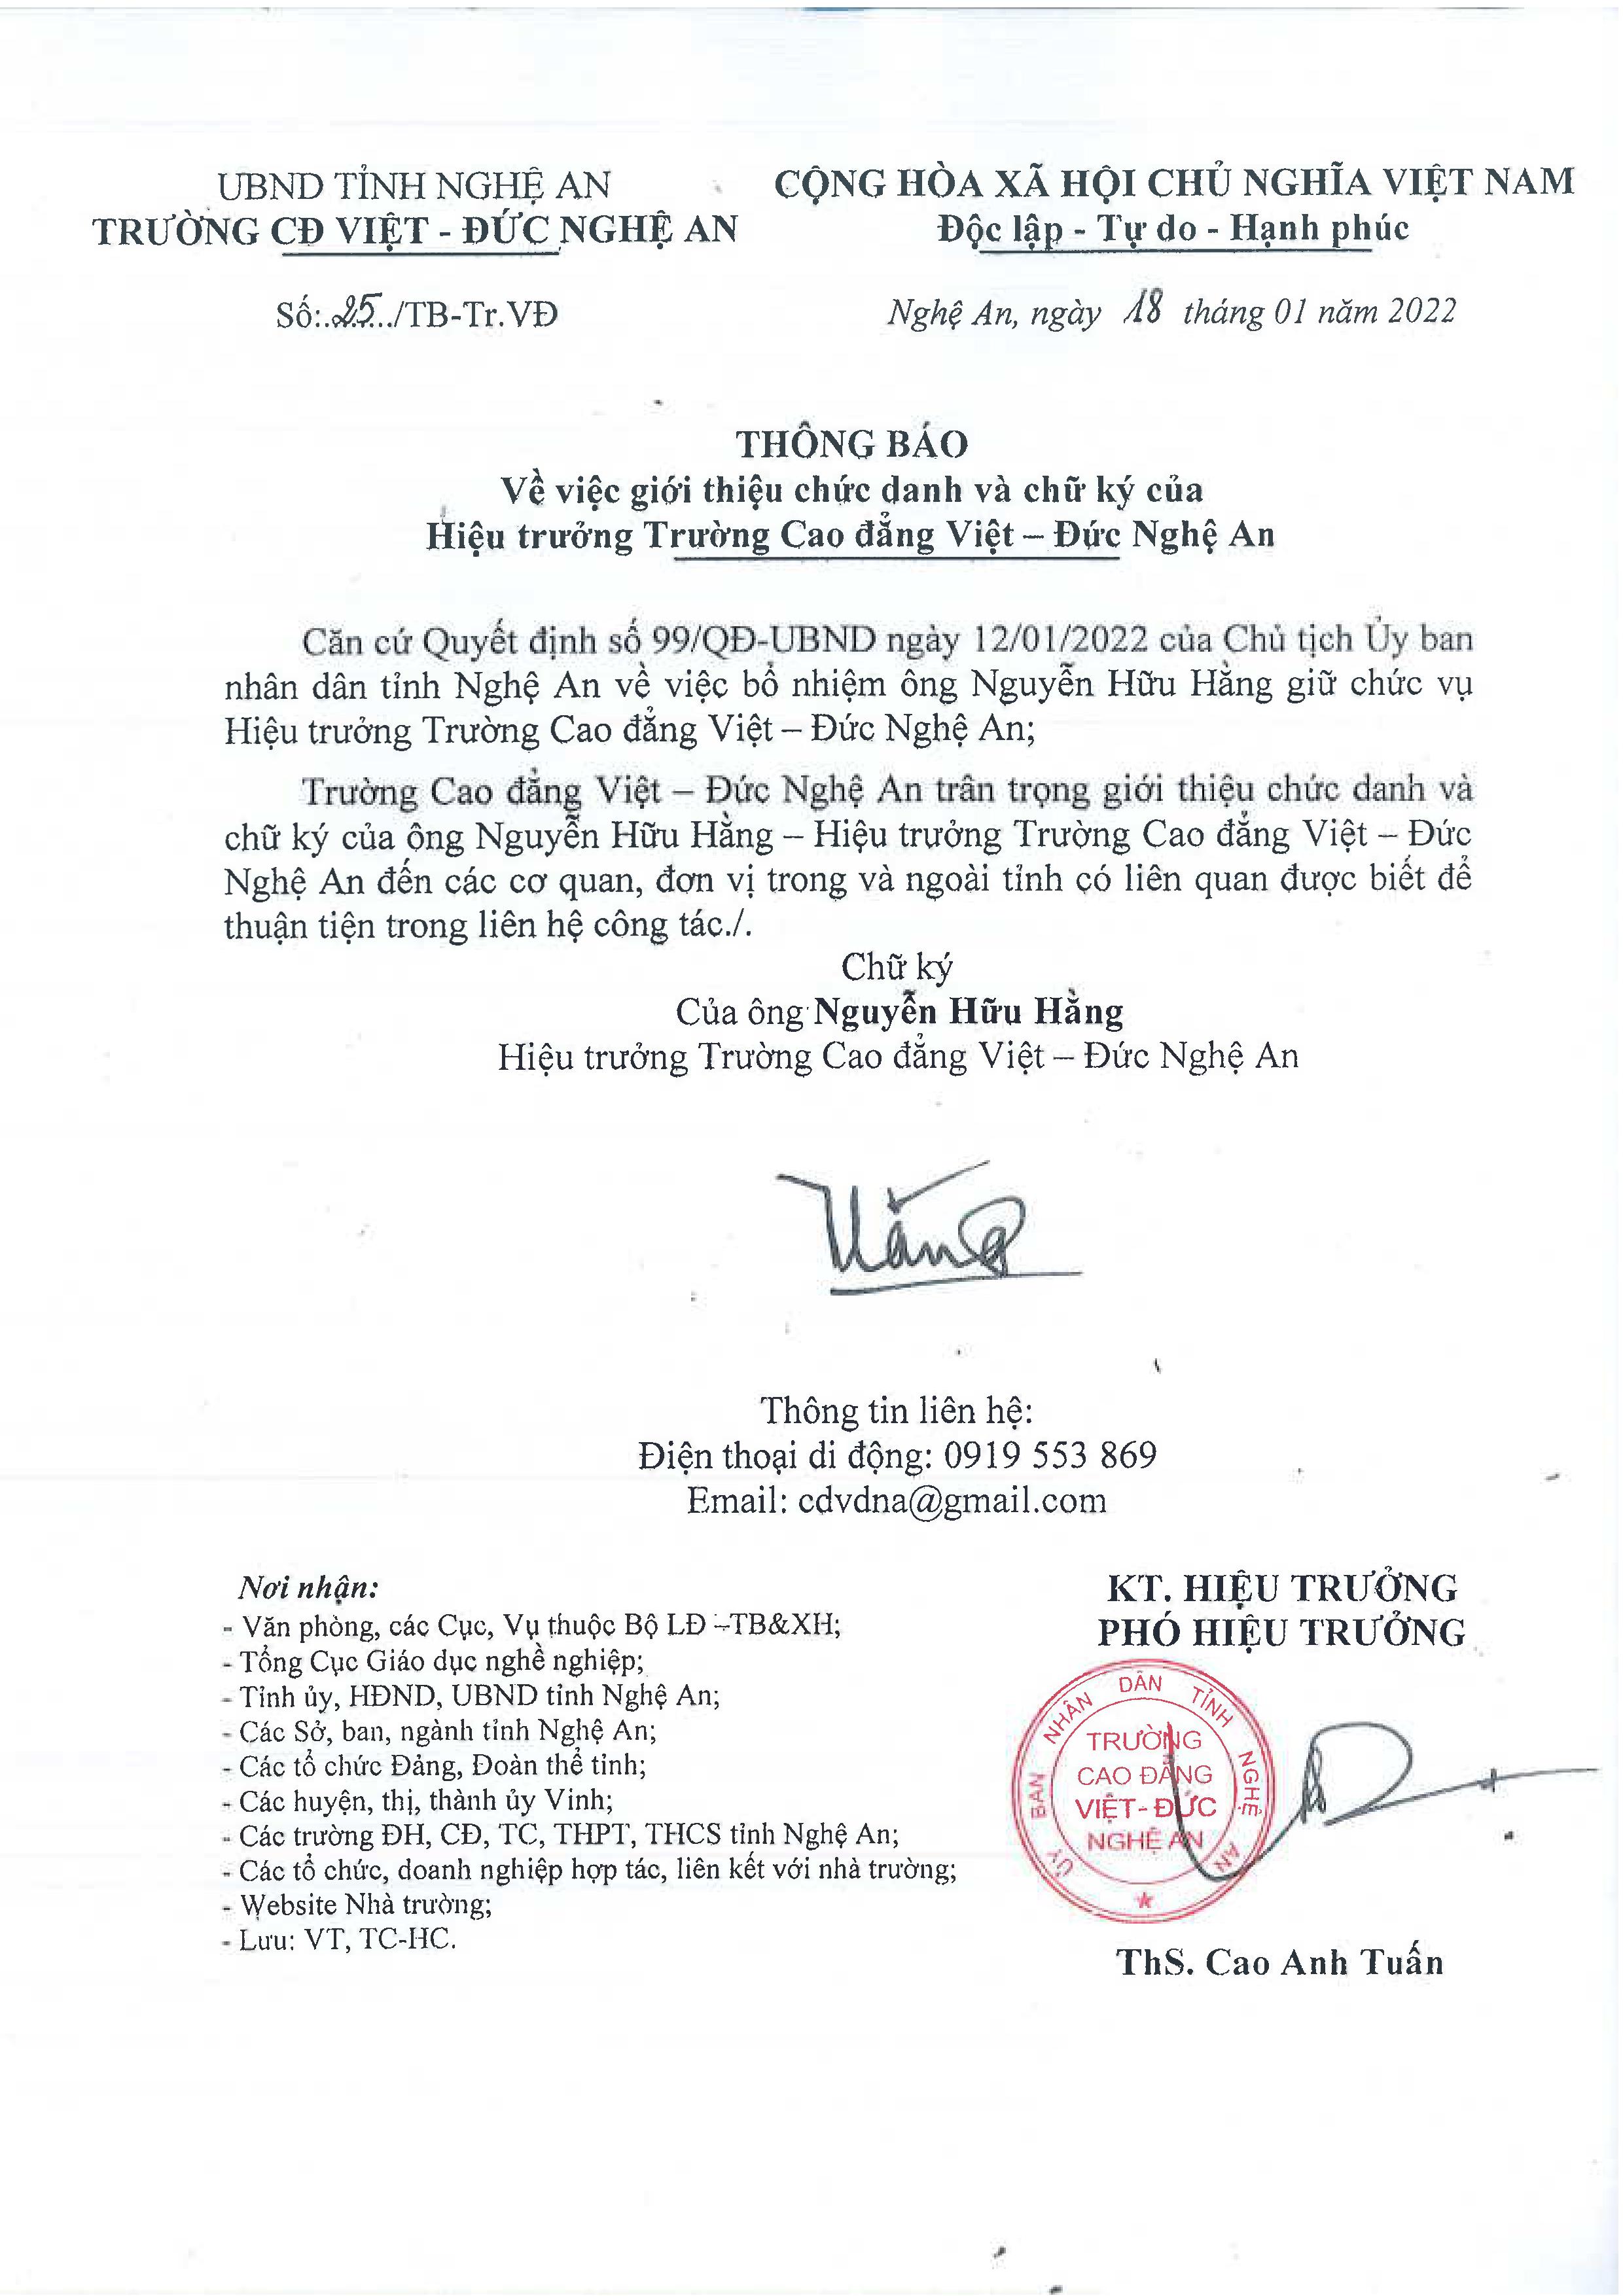 Thông báo số 25/TB-Tr.VĐ ngày 18/01/2022 của Trường Cao đẳng Việt - Đức Nghệ An về việc giới thiệu chức danh và chữ ký của Hiệu trưởng Trường Cao đẳng Việt - Đức Nghệ An